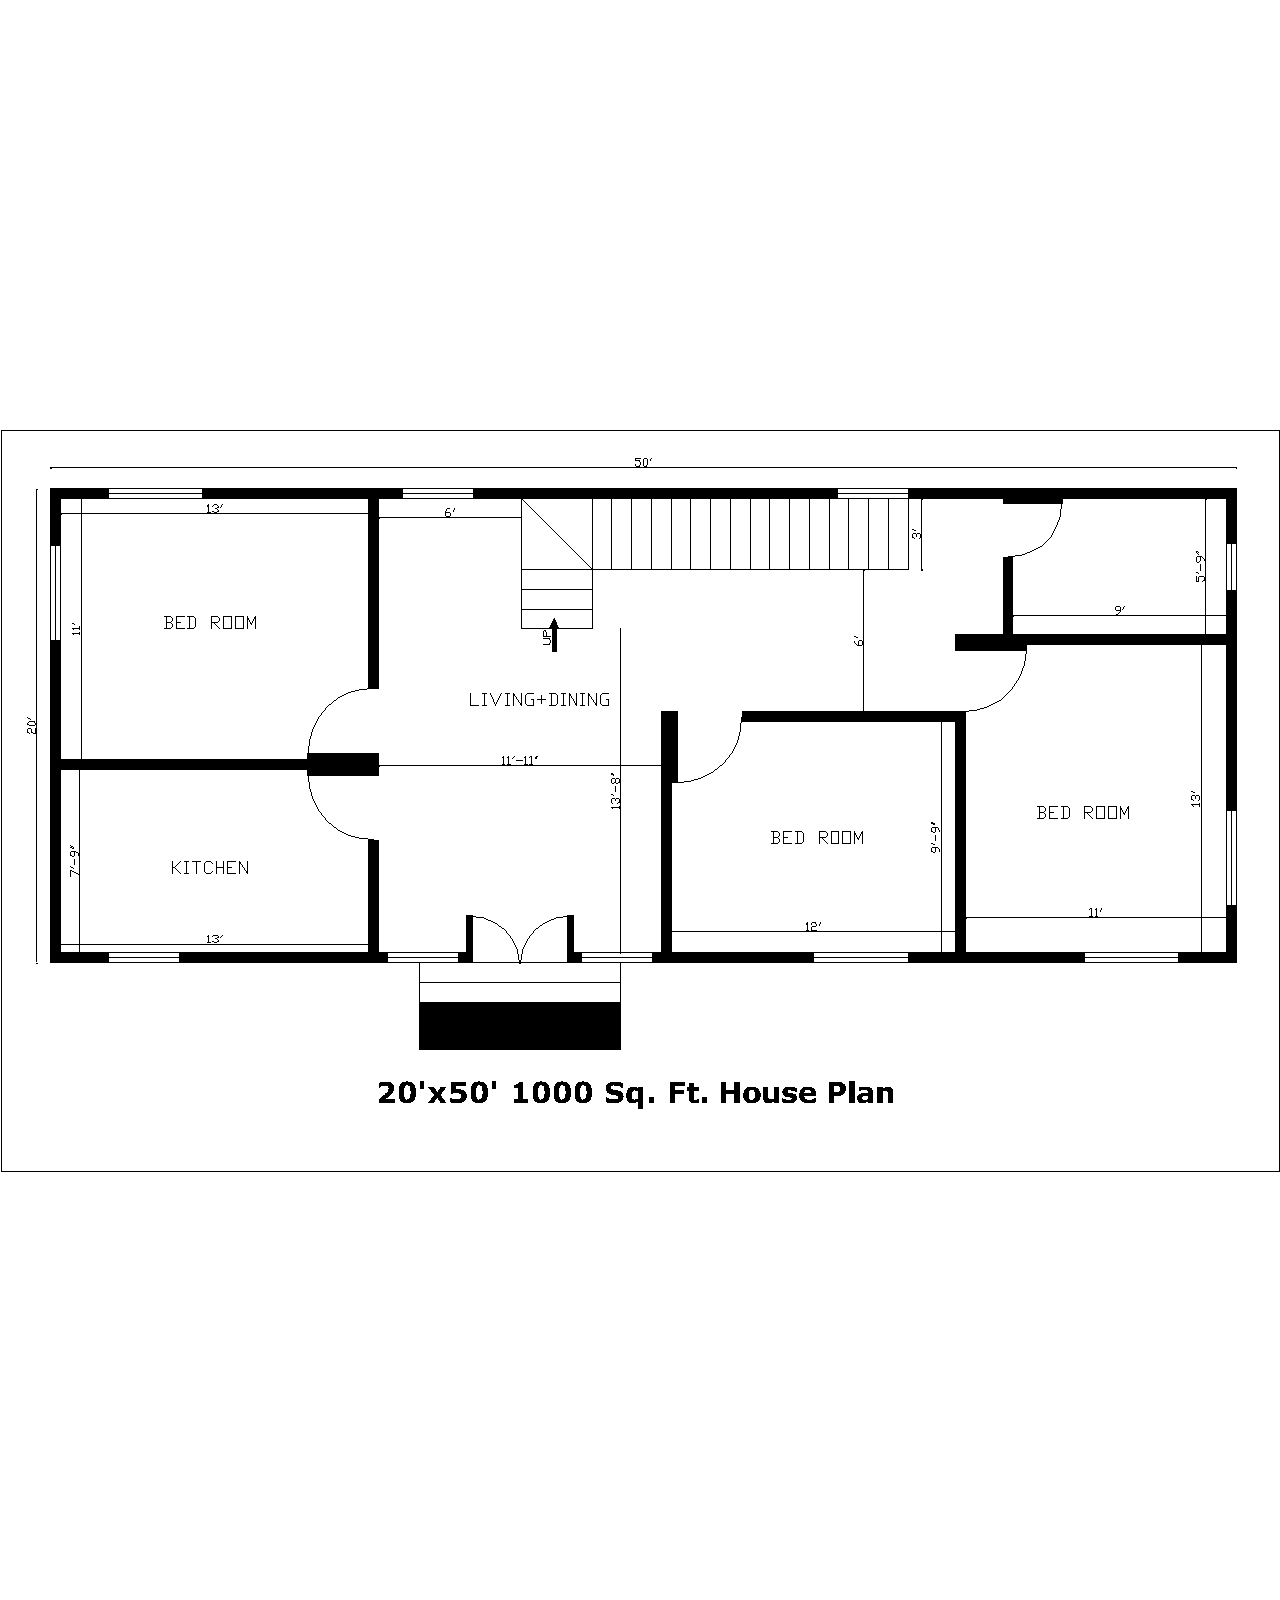 20'x50' 1000 Sq. Ft. House Plan | 20'x50' 1000 Sq. Ft. Gharka Naksha